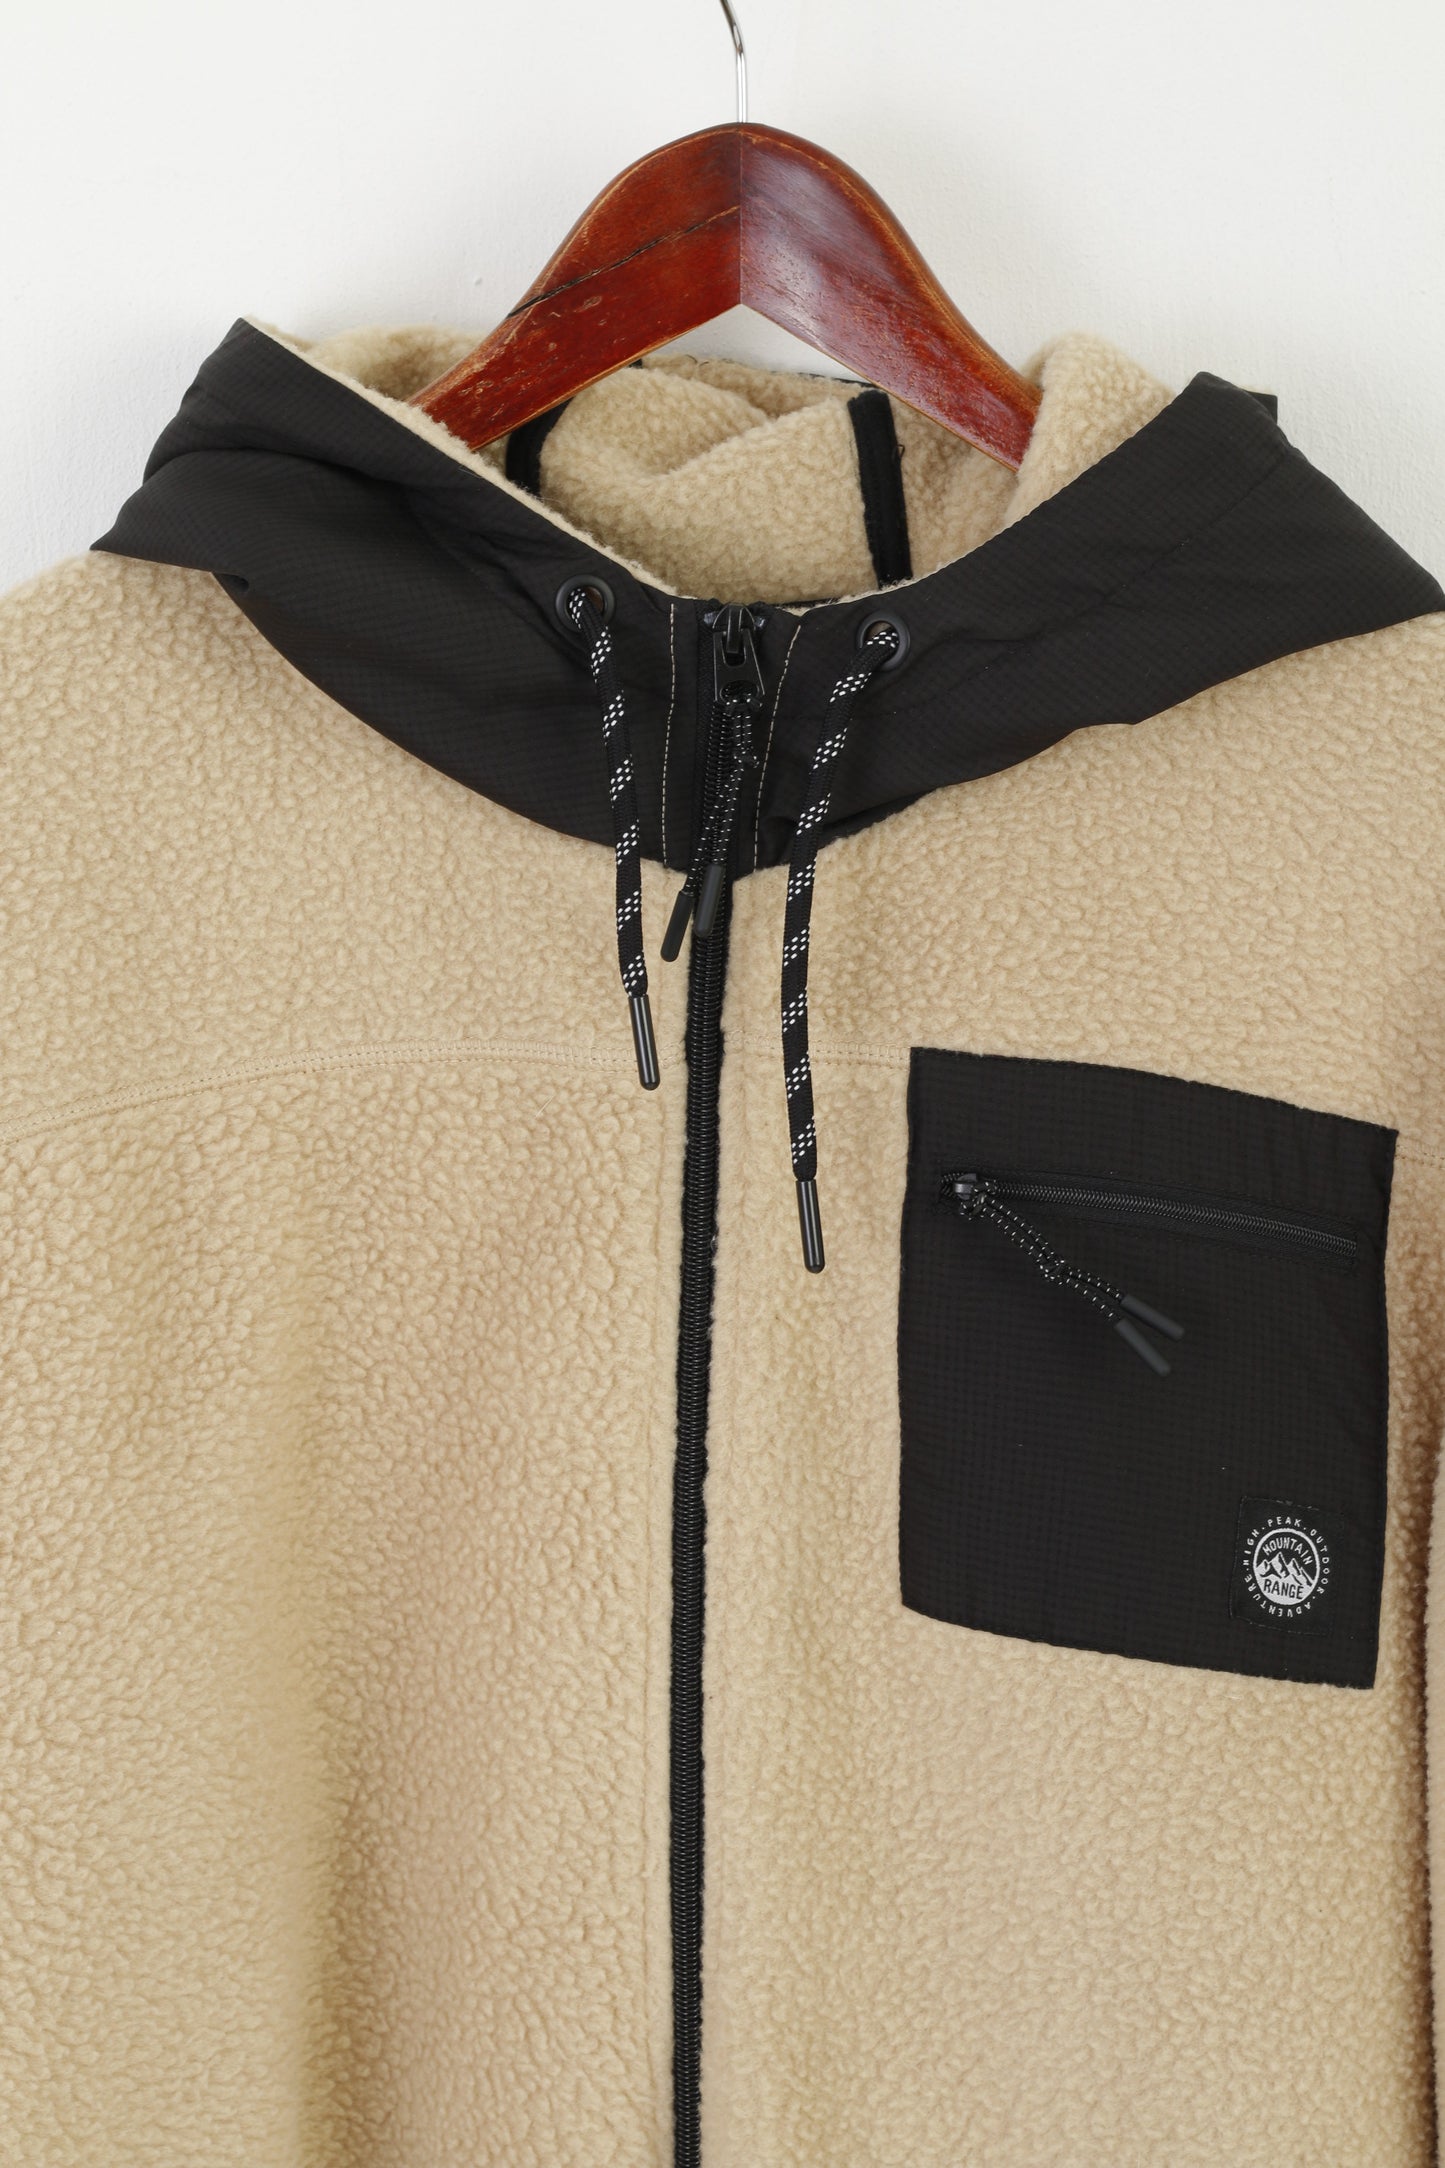 EASY Men XXL Fleece Top Beige Mountain Range Outdoor Full Zipper Hooded Sweatshirt